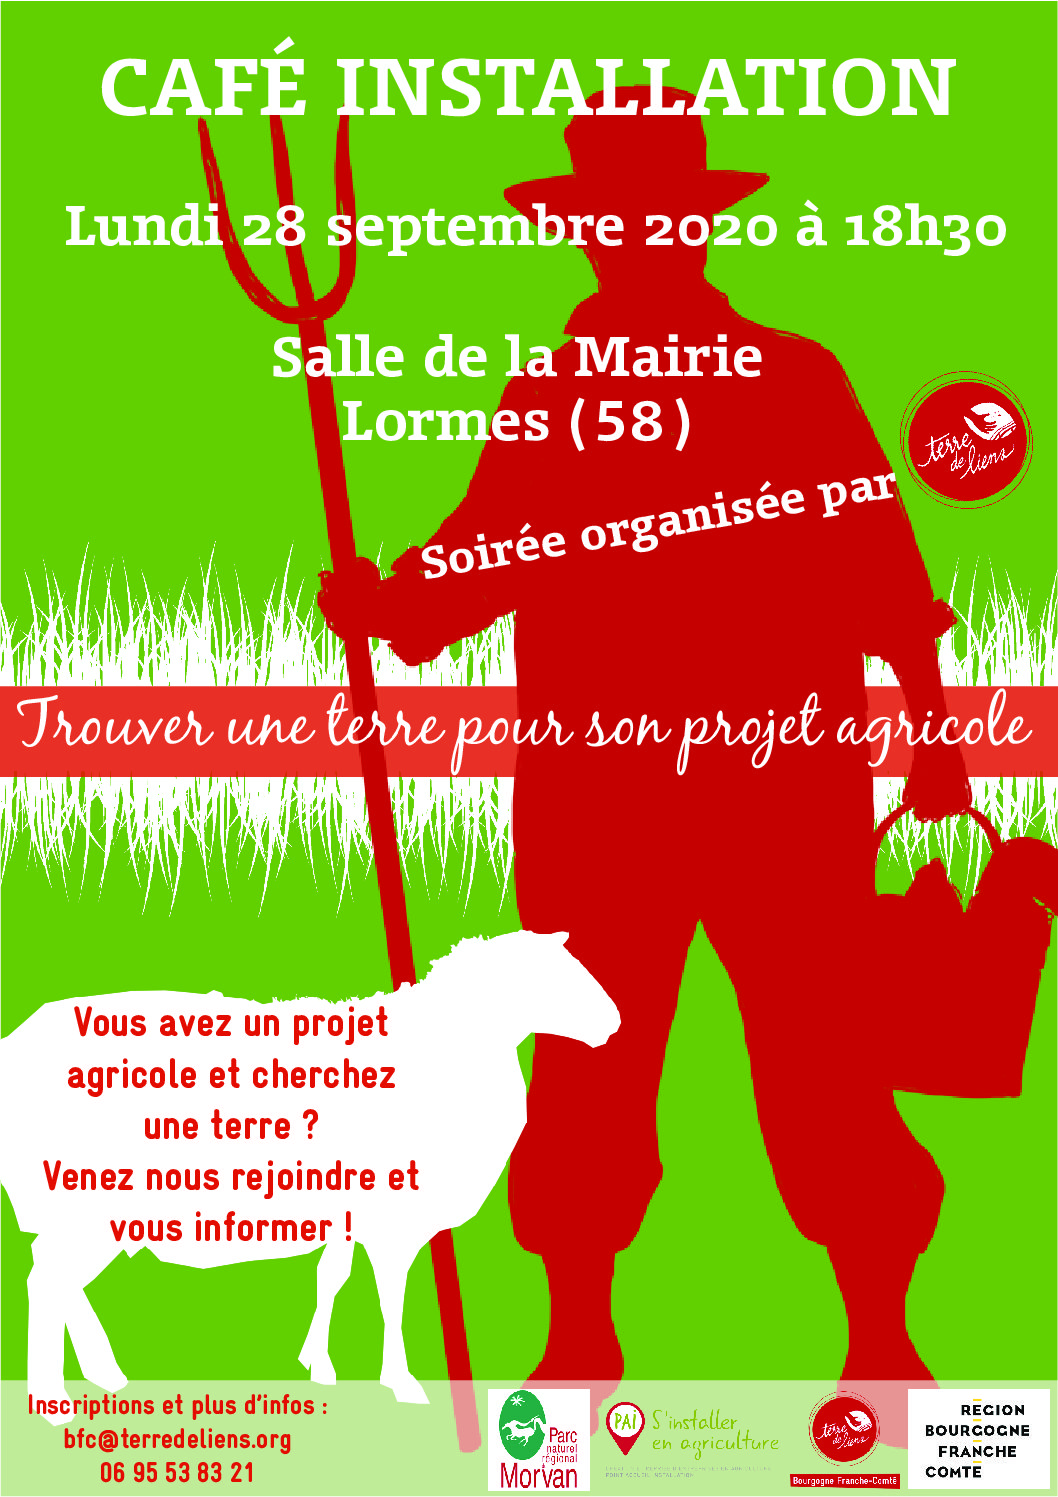 Trouver une terre pour son projet agricole ? Venez nous rejoindre et vous informer le lundi 28 septembre à Lormes !